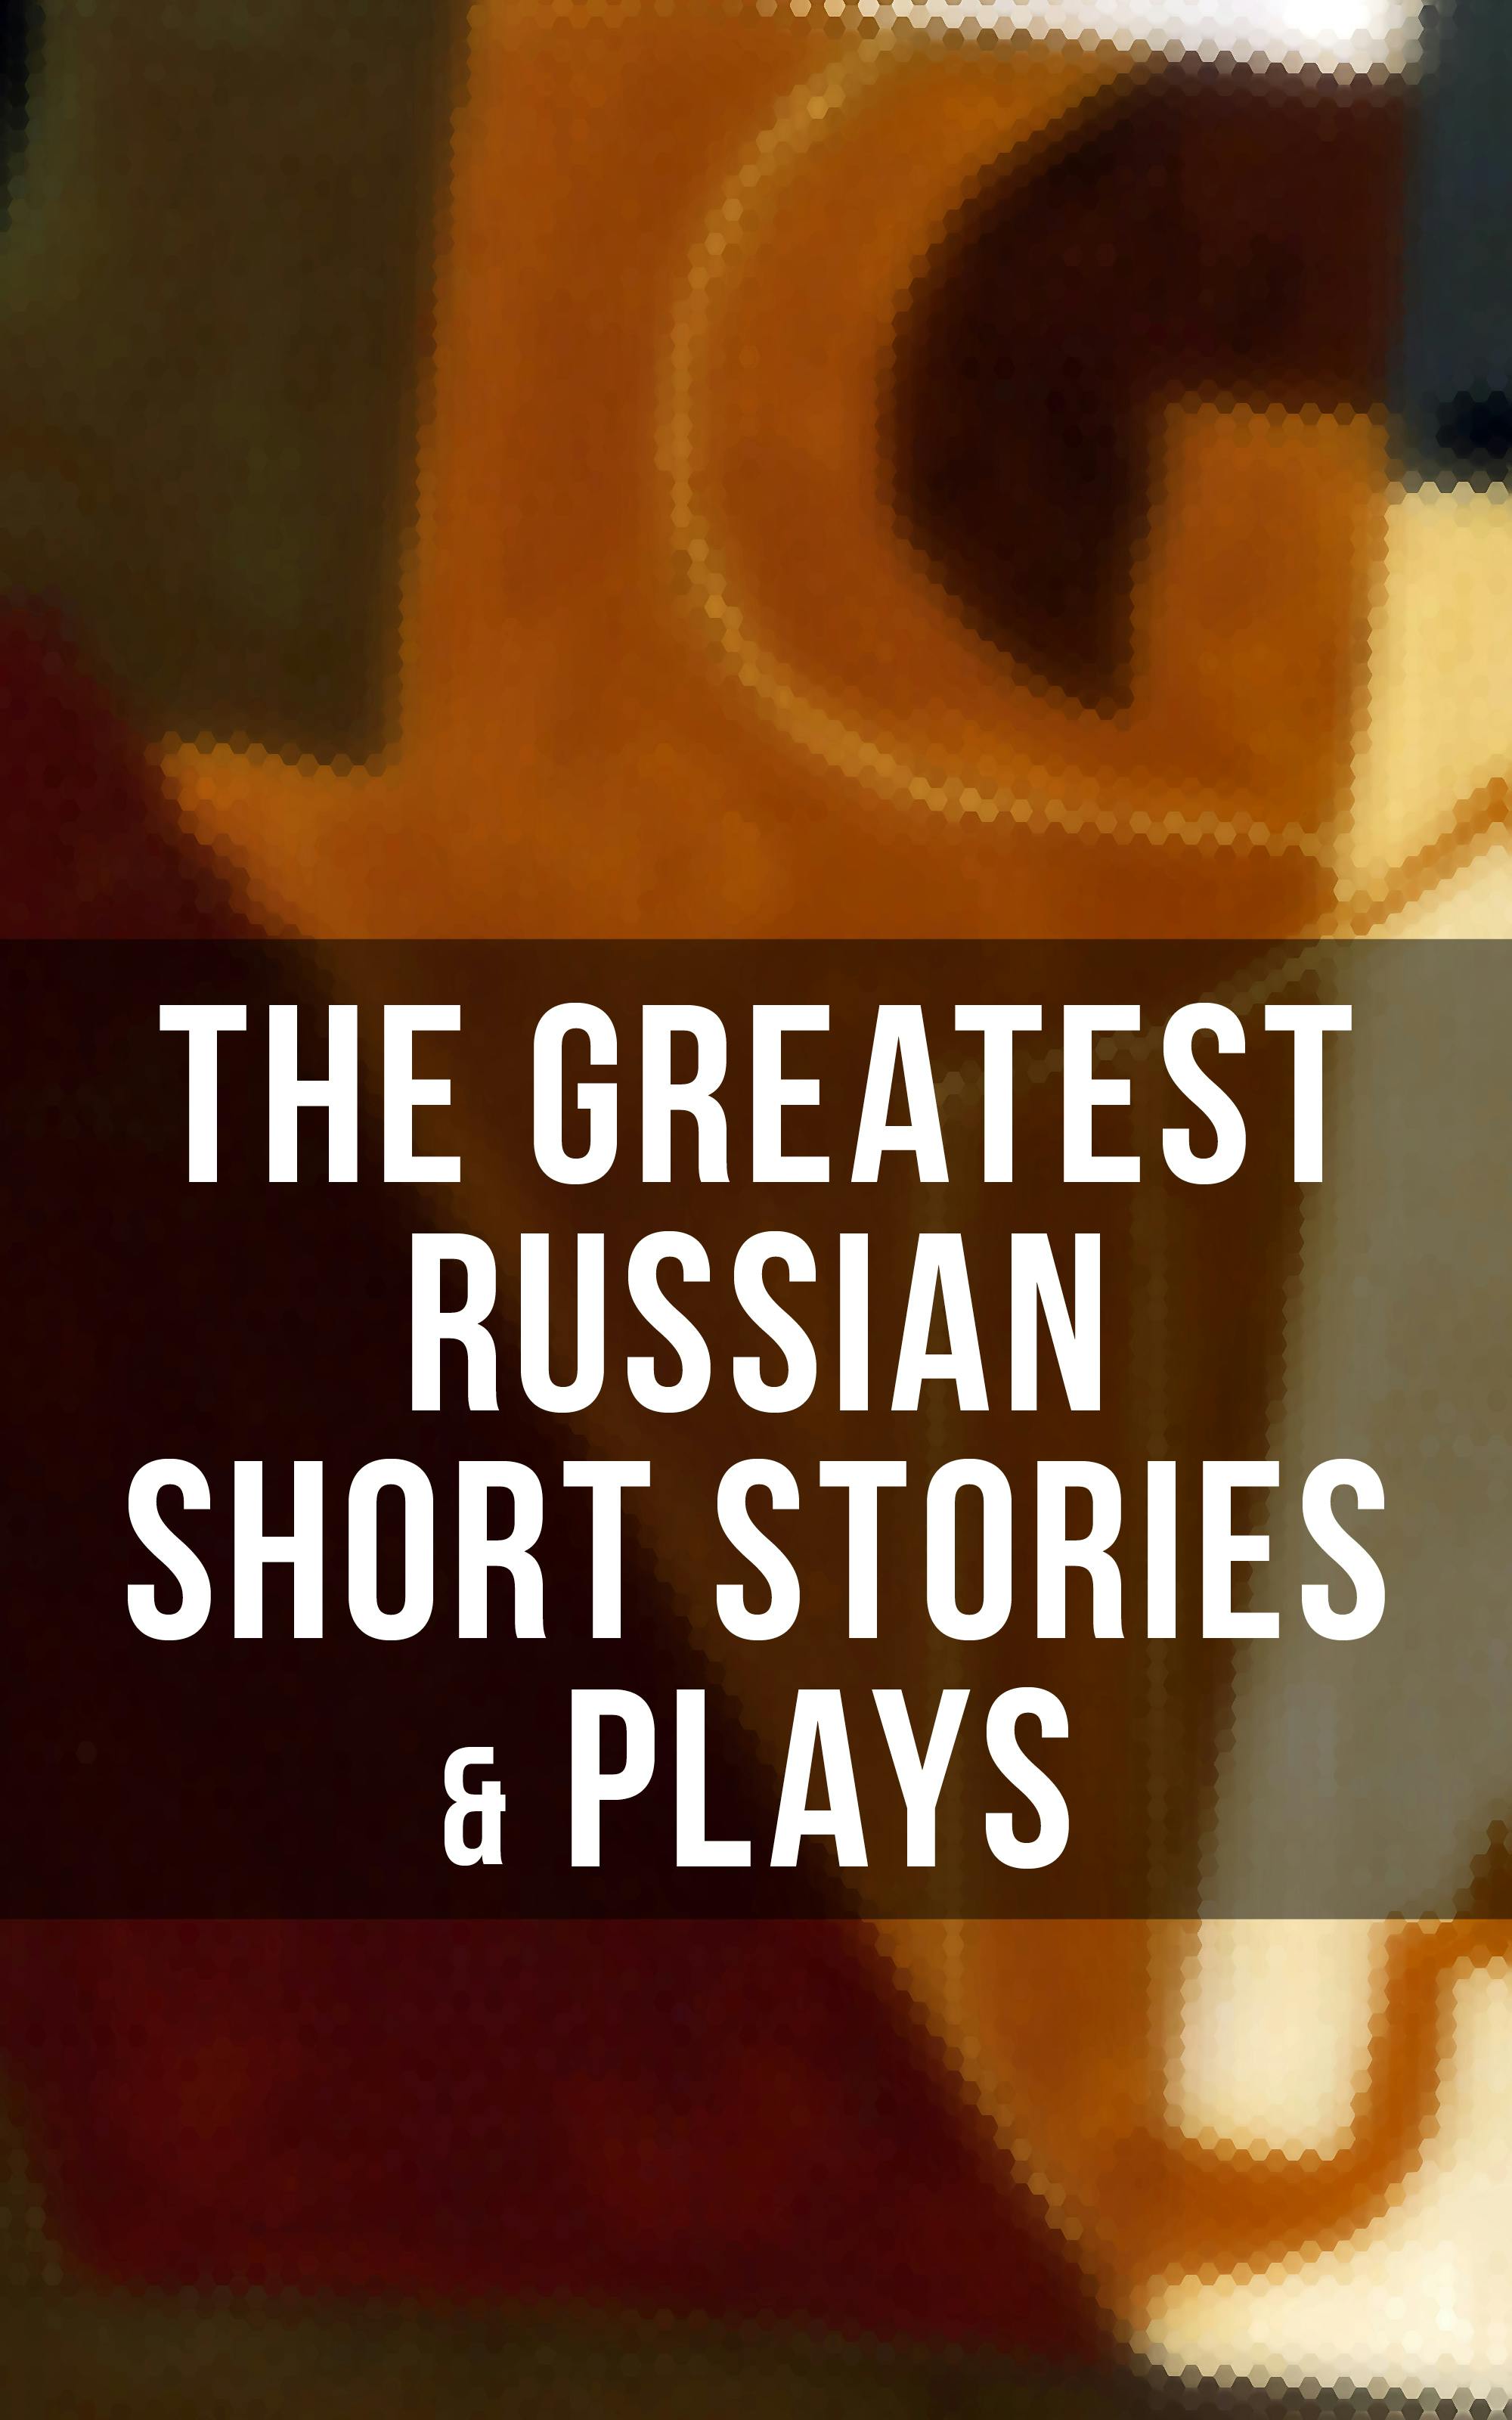 The Greatest Russian Short Stories & Plays: Dostoevsky, Tolstoy, Chekhov, Gorky, Gogol & more (Including Essays & Lectures on Russian Novelists) - M.Y. Saltykov, S.T. Semyonov, L.N. Andreyev, M.P. Artzybashev, William Lyon Phelps, Maxim Gorky, A.S. Pushkin, V.G. Korolenko, Anton Chekhov, K. Sologub, N.V. Gogol, F.M. Dostoyevsky, L.N. Tolstoy, A.I. Kuprin, I.S. Turgenev, V.N. Garshin, I.N. Potapenko